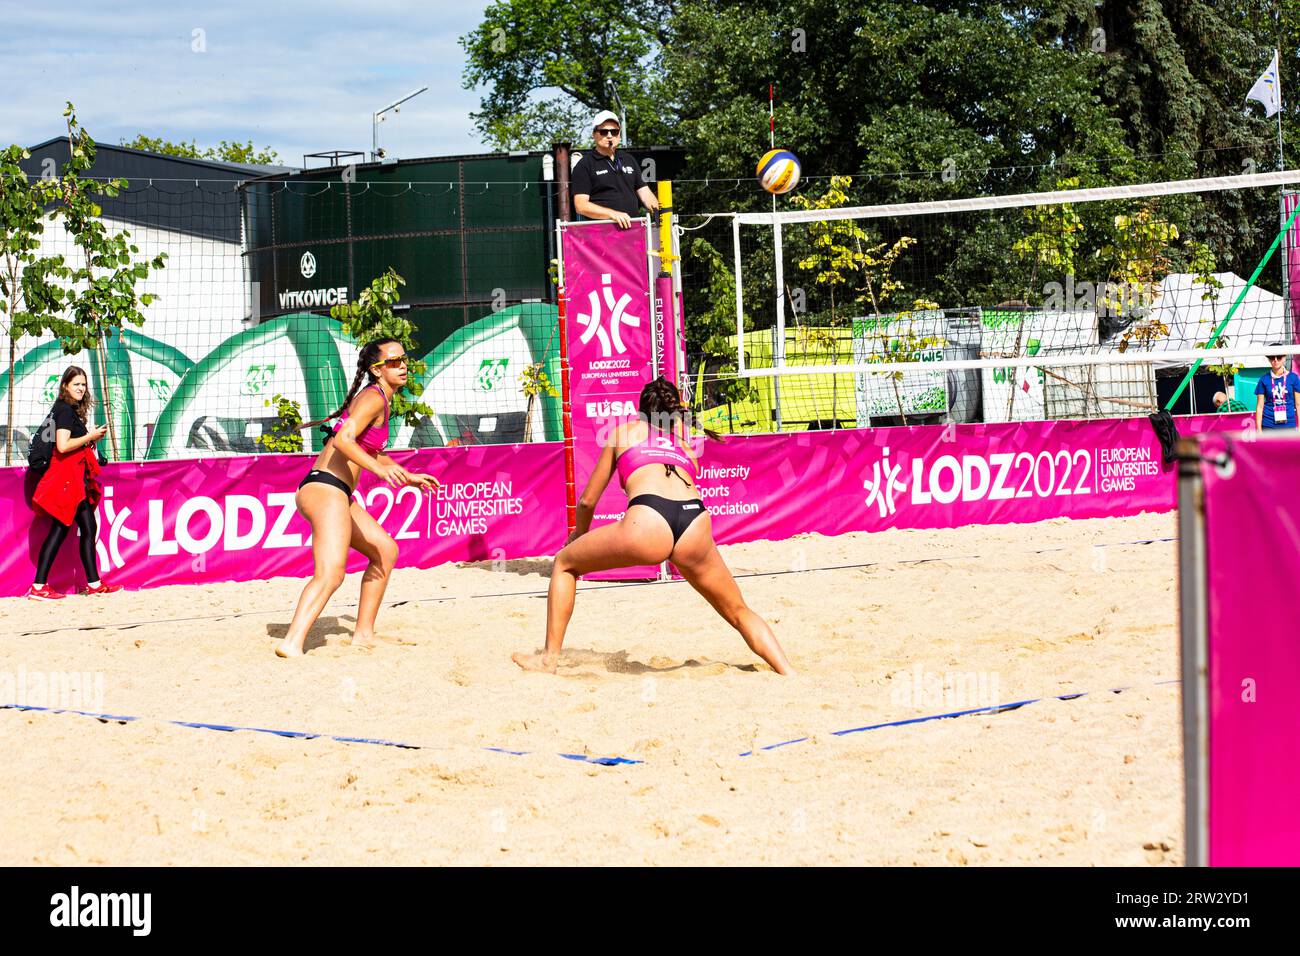 Volley-ball de plage aux Jeux sportifs universitaires européens (EUSG) à Lodz, Pologne, juillet 2022. Il faut être très têtu pour continuer à gagner sur le sable. Banque D'Images